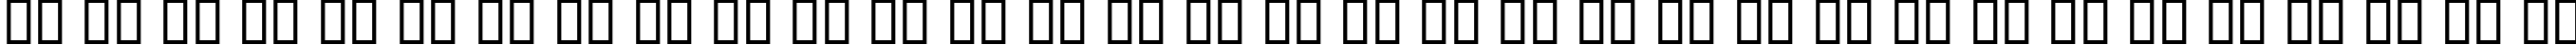 Пример написания русского алфавита шрифтом KacstTitle